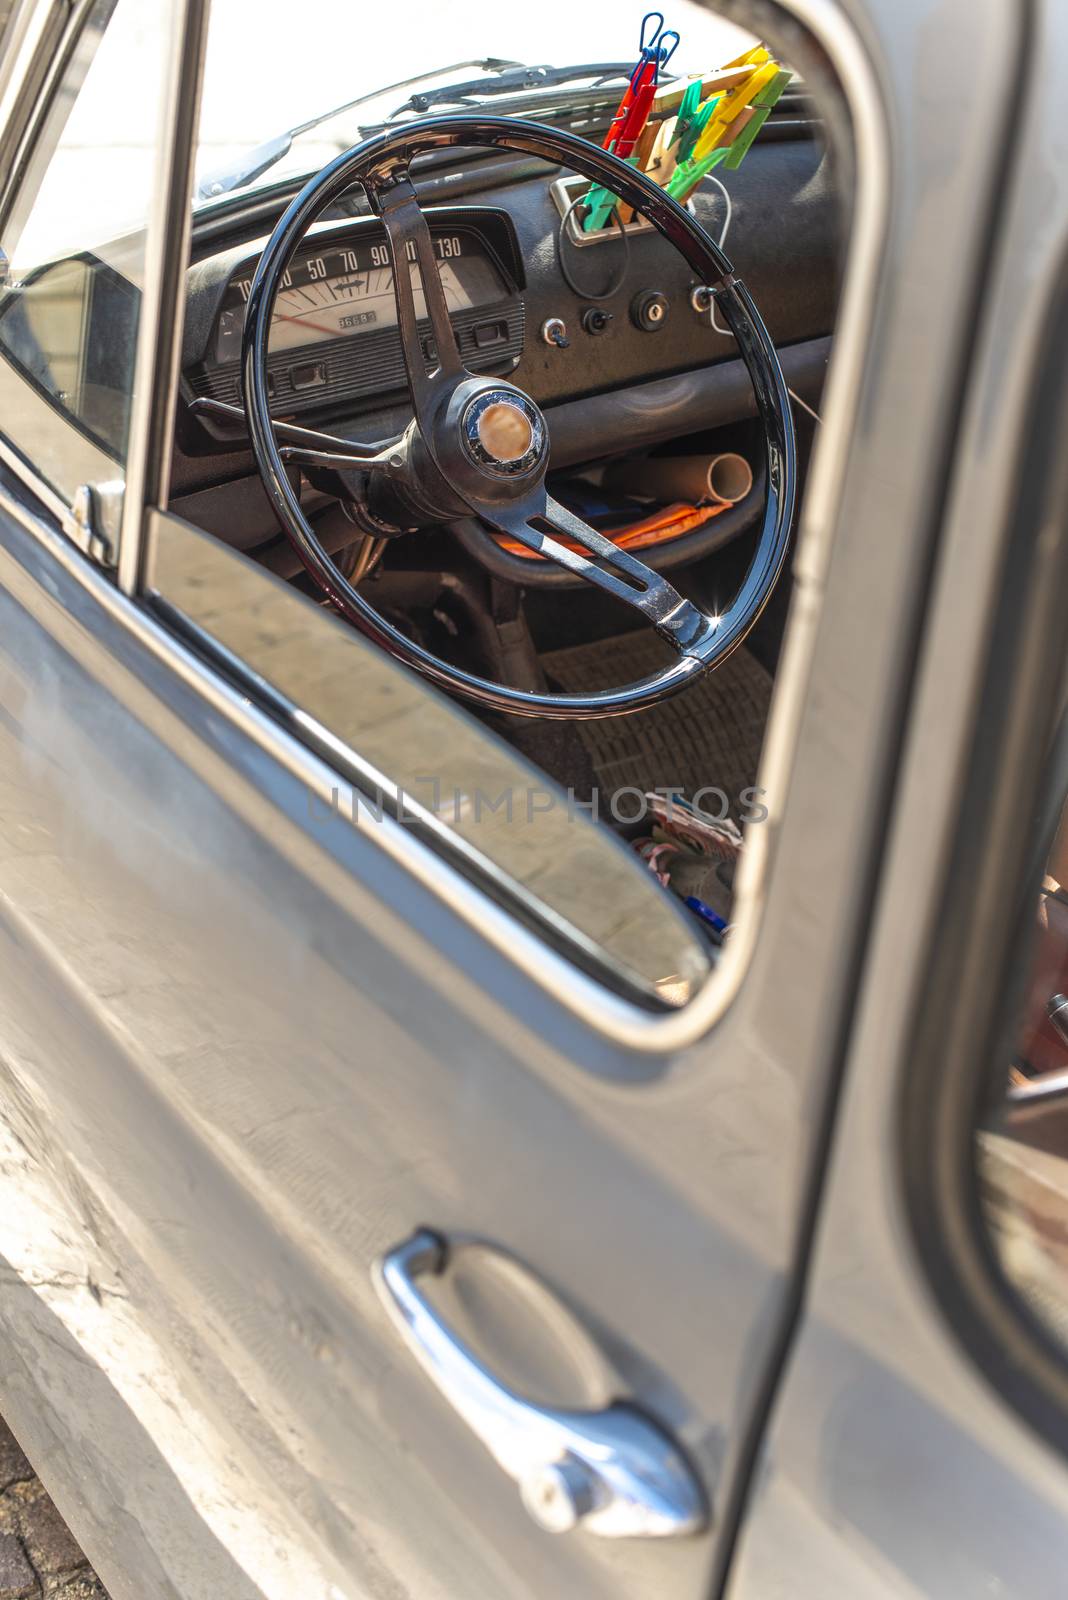 Steering wheel on vintage car. Opened window on old vintage car. by deyan_georgiev